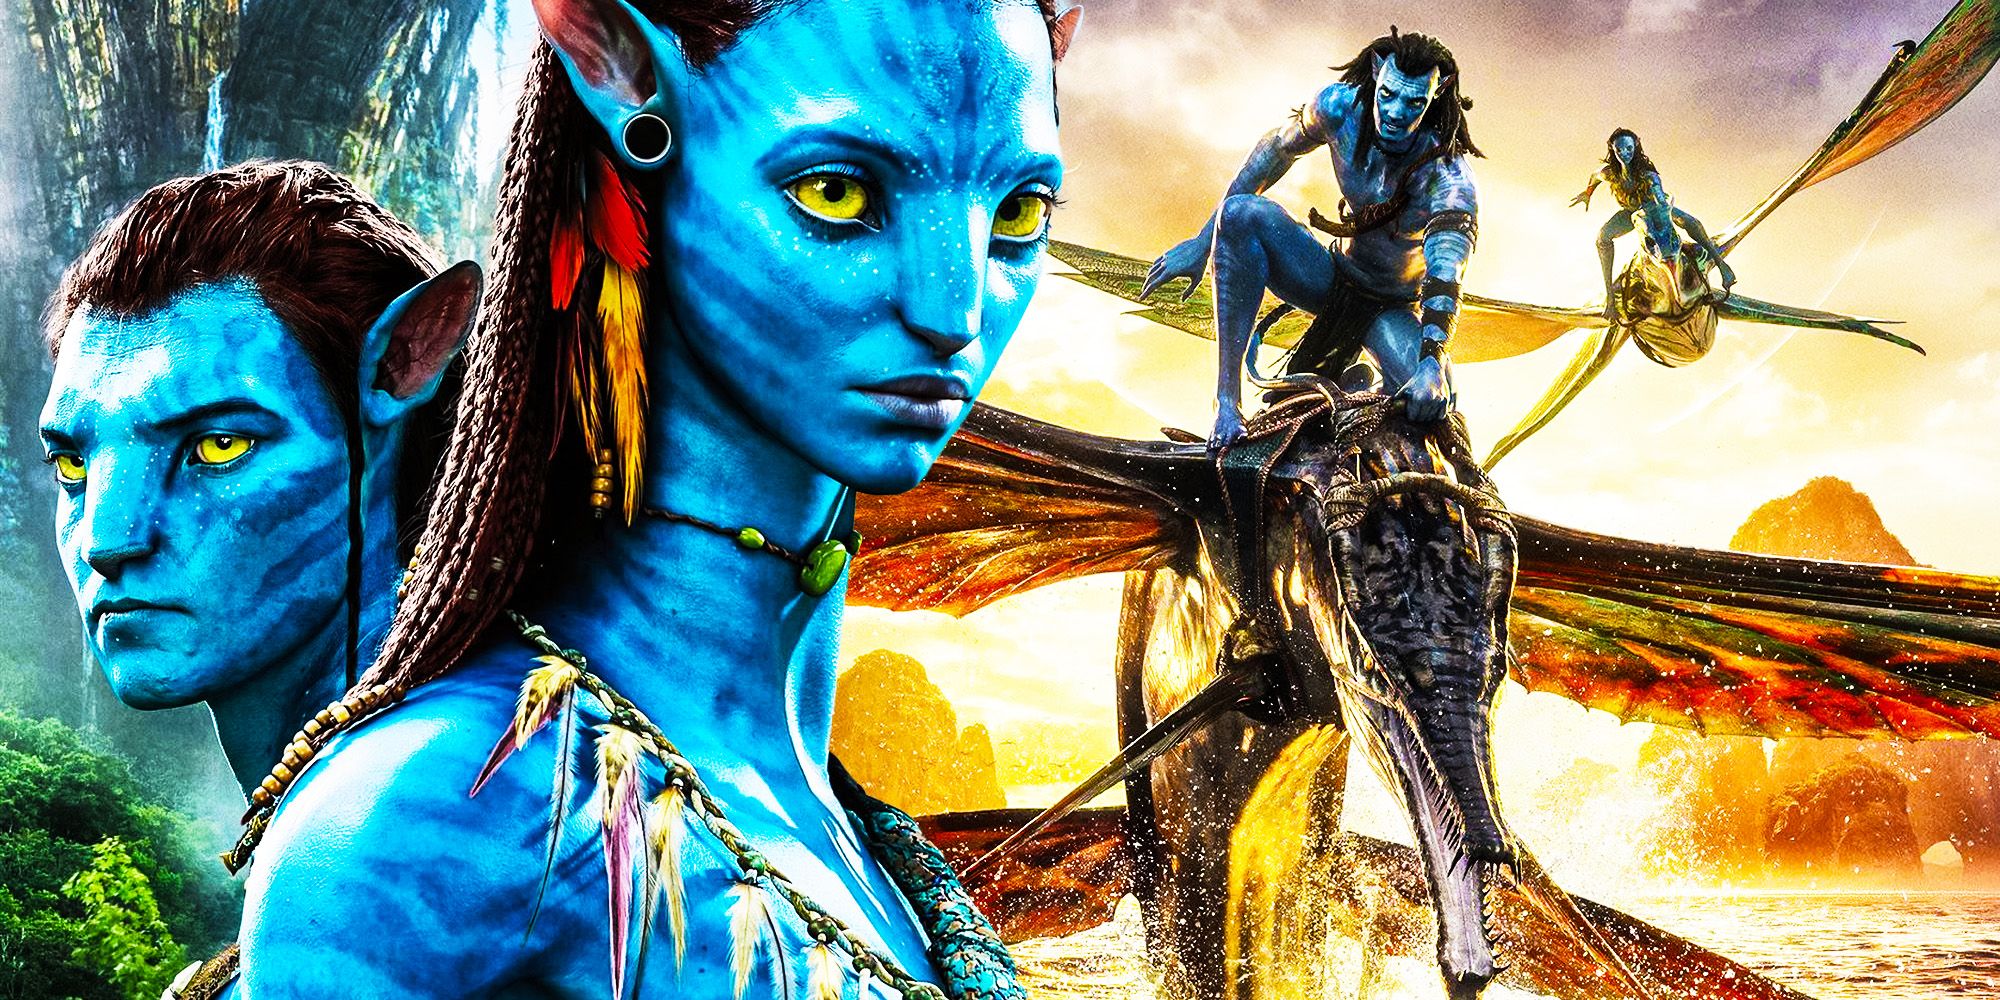 Avatar Avatar way of waterJake and Neytiri